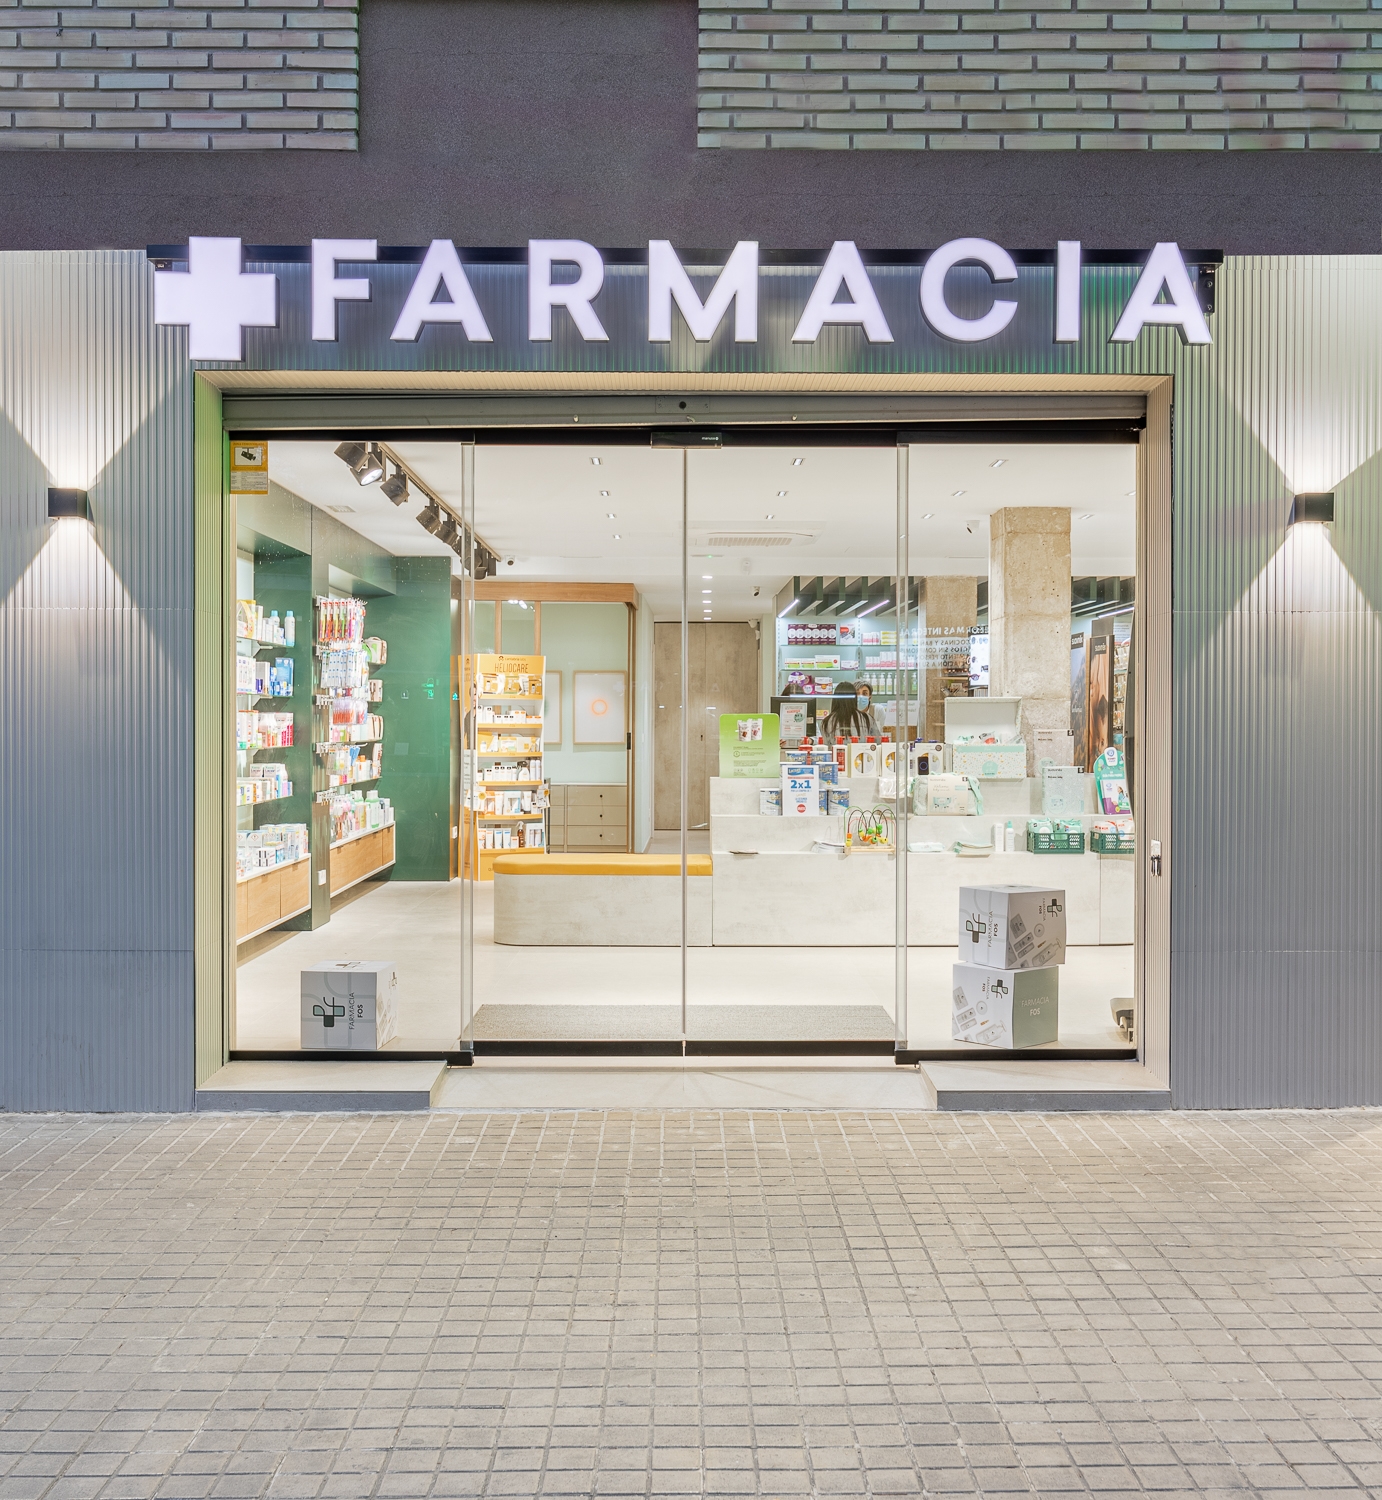 Pharmacy in Valencia